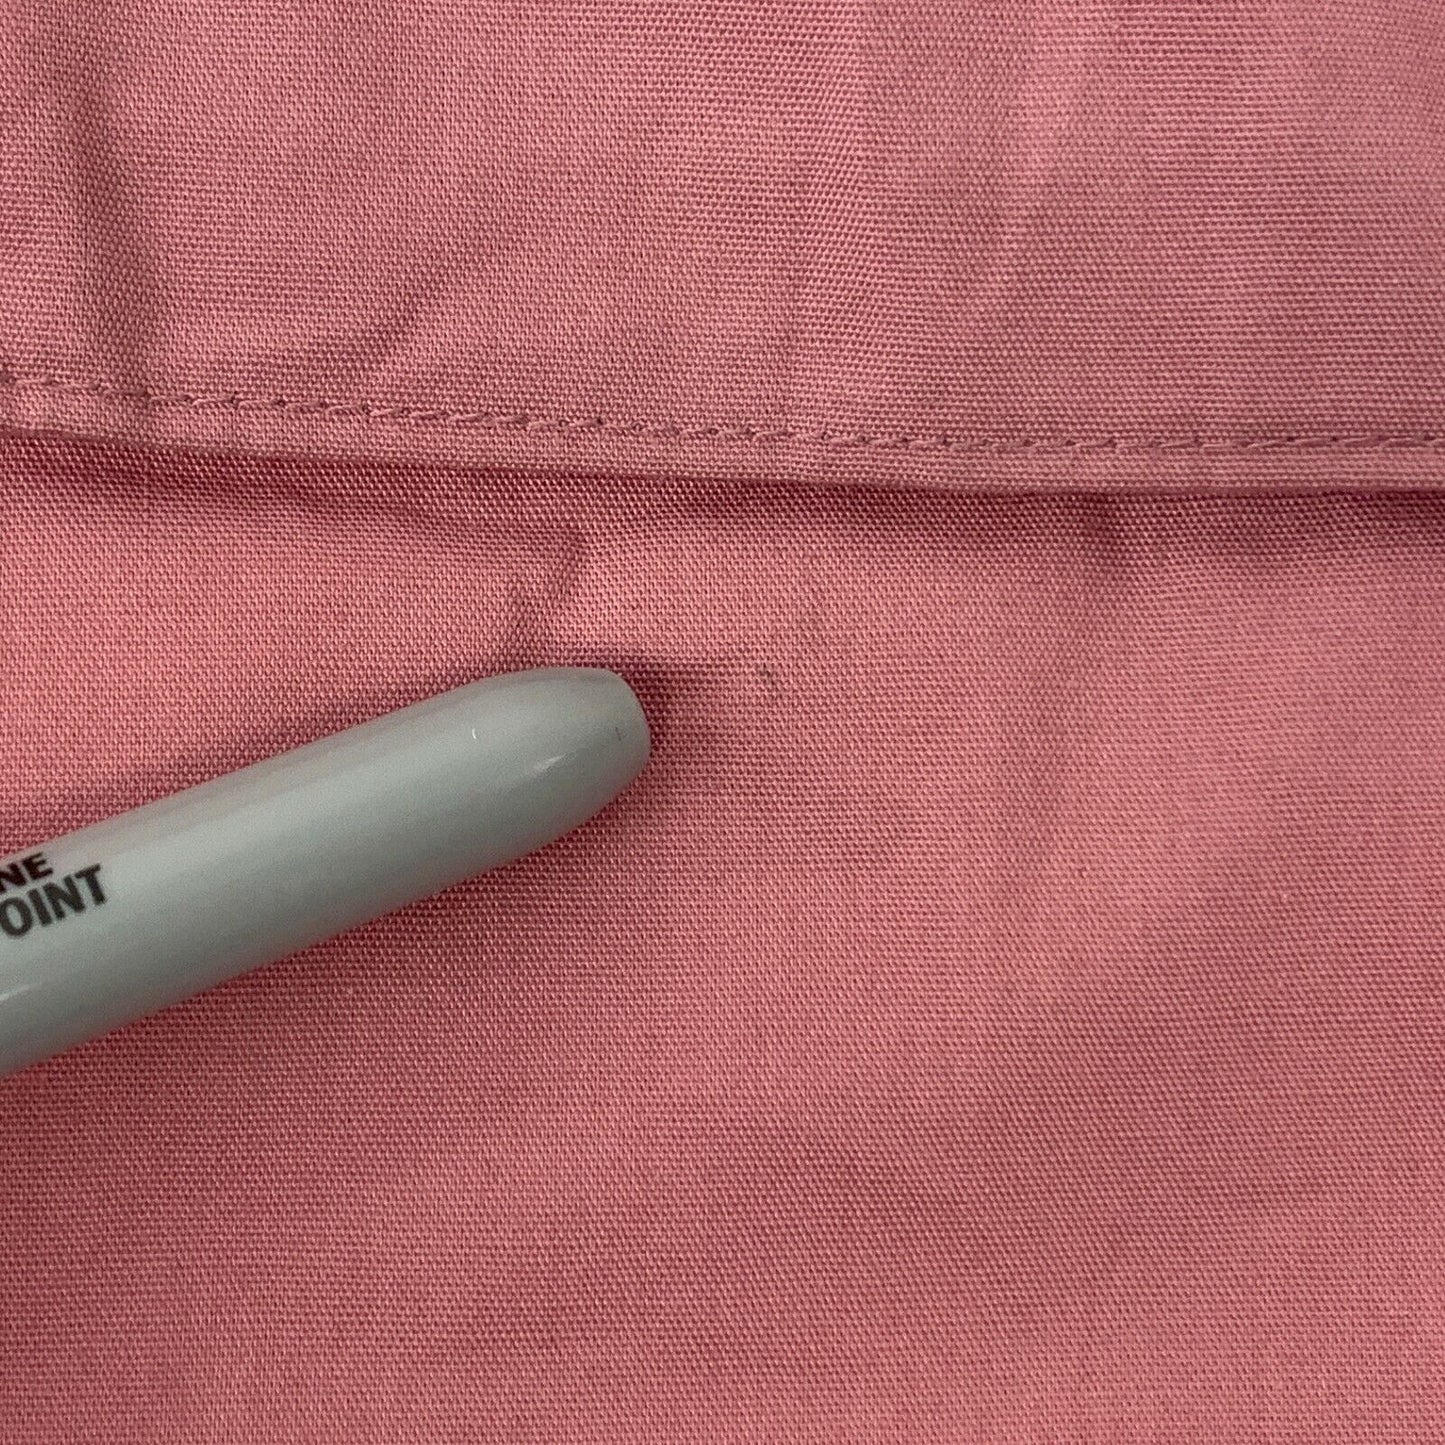 Woolrich 女式谷仓野外杂务大衣复古 70 年代粉色羊毛衬里美国制造大码